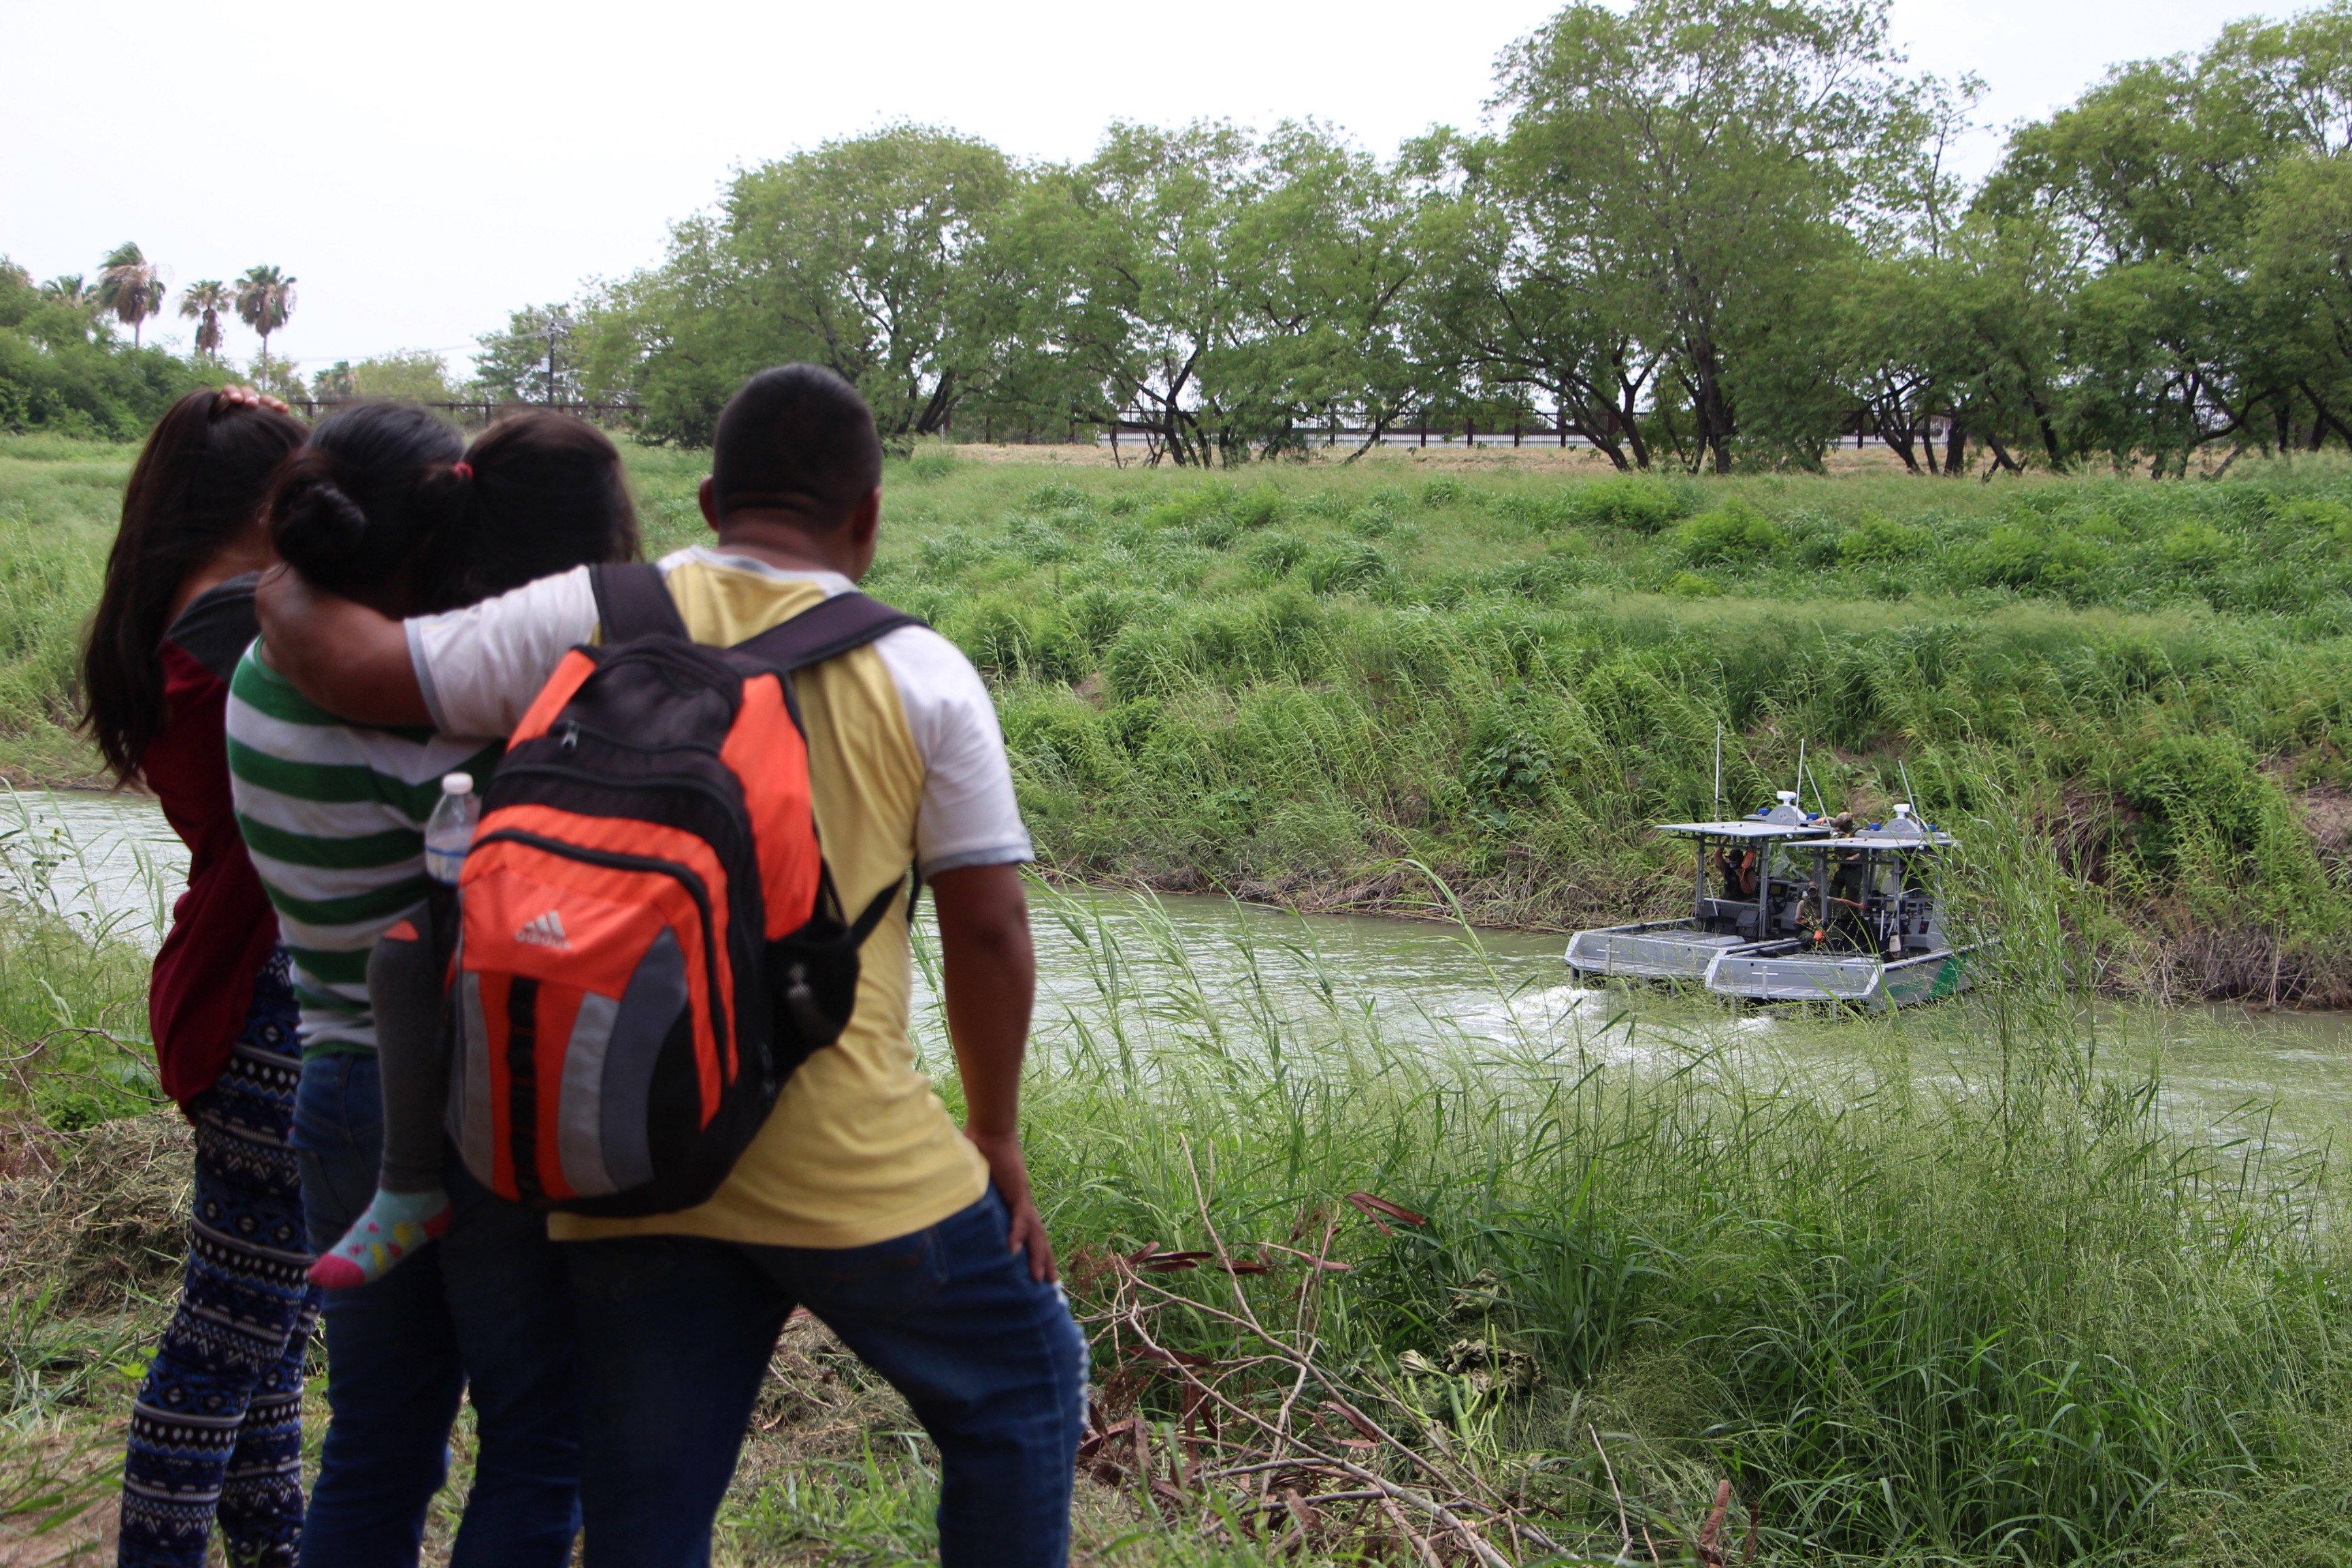  Una familia migrante observa una patrulla fronteriza de los Estados Unidos que vigila las aguas del Rió Bravo en la frontera de Matamoros, Tamaulipas, México. (Foto Prensa Libre: EFE)